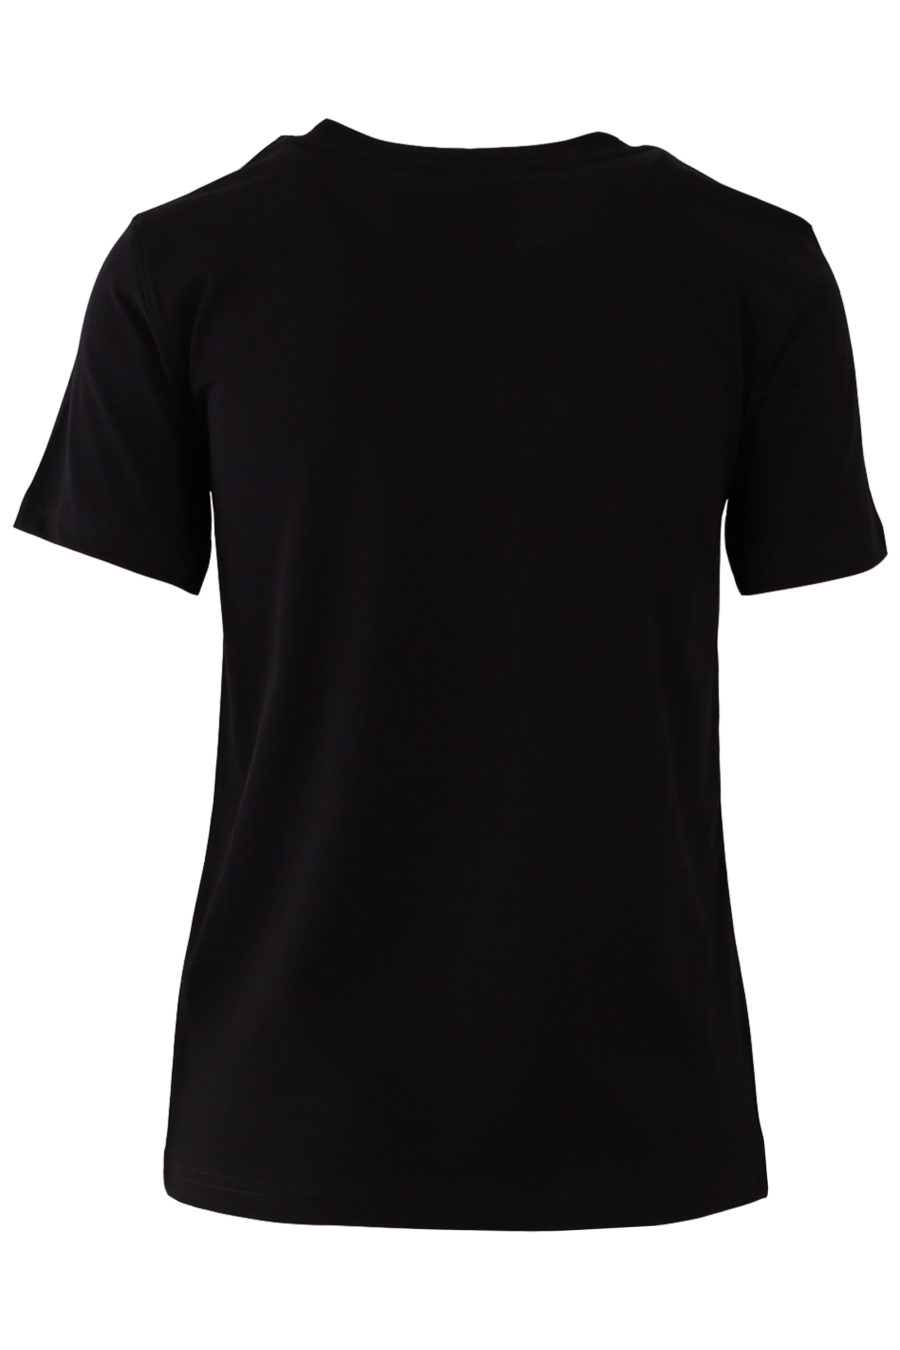 Camiseta de color negro con logo blanco - 19eddf71d8a8013bd48d7ef4165a8a8e4937db35